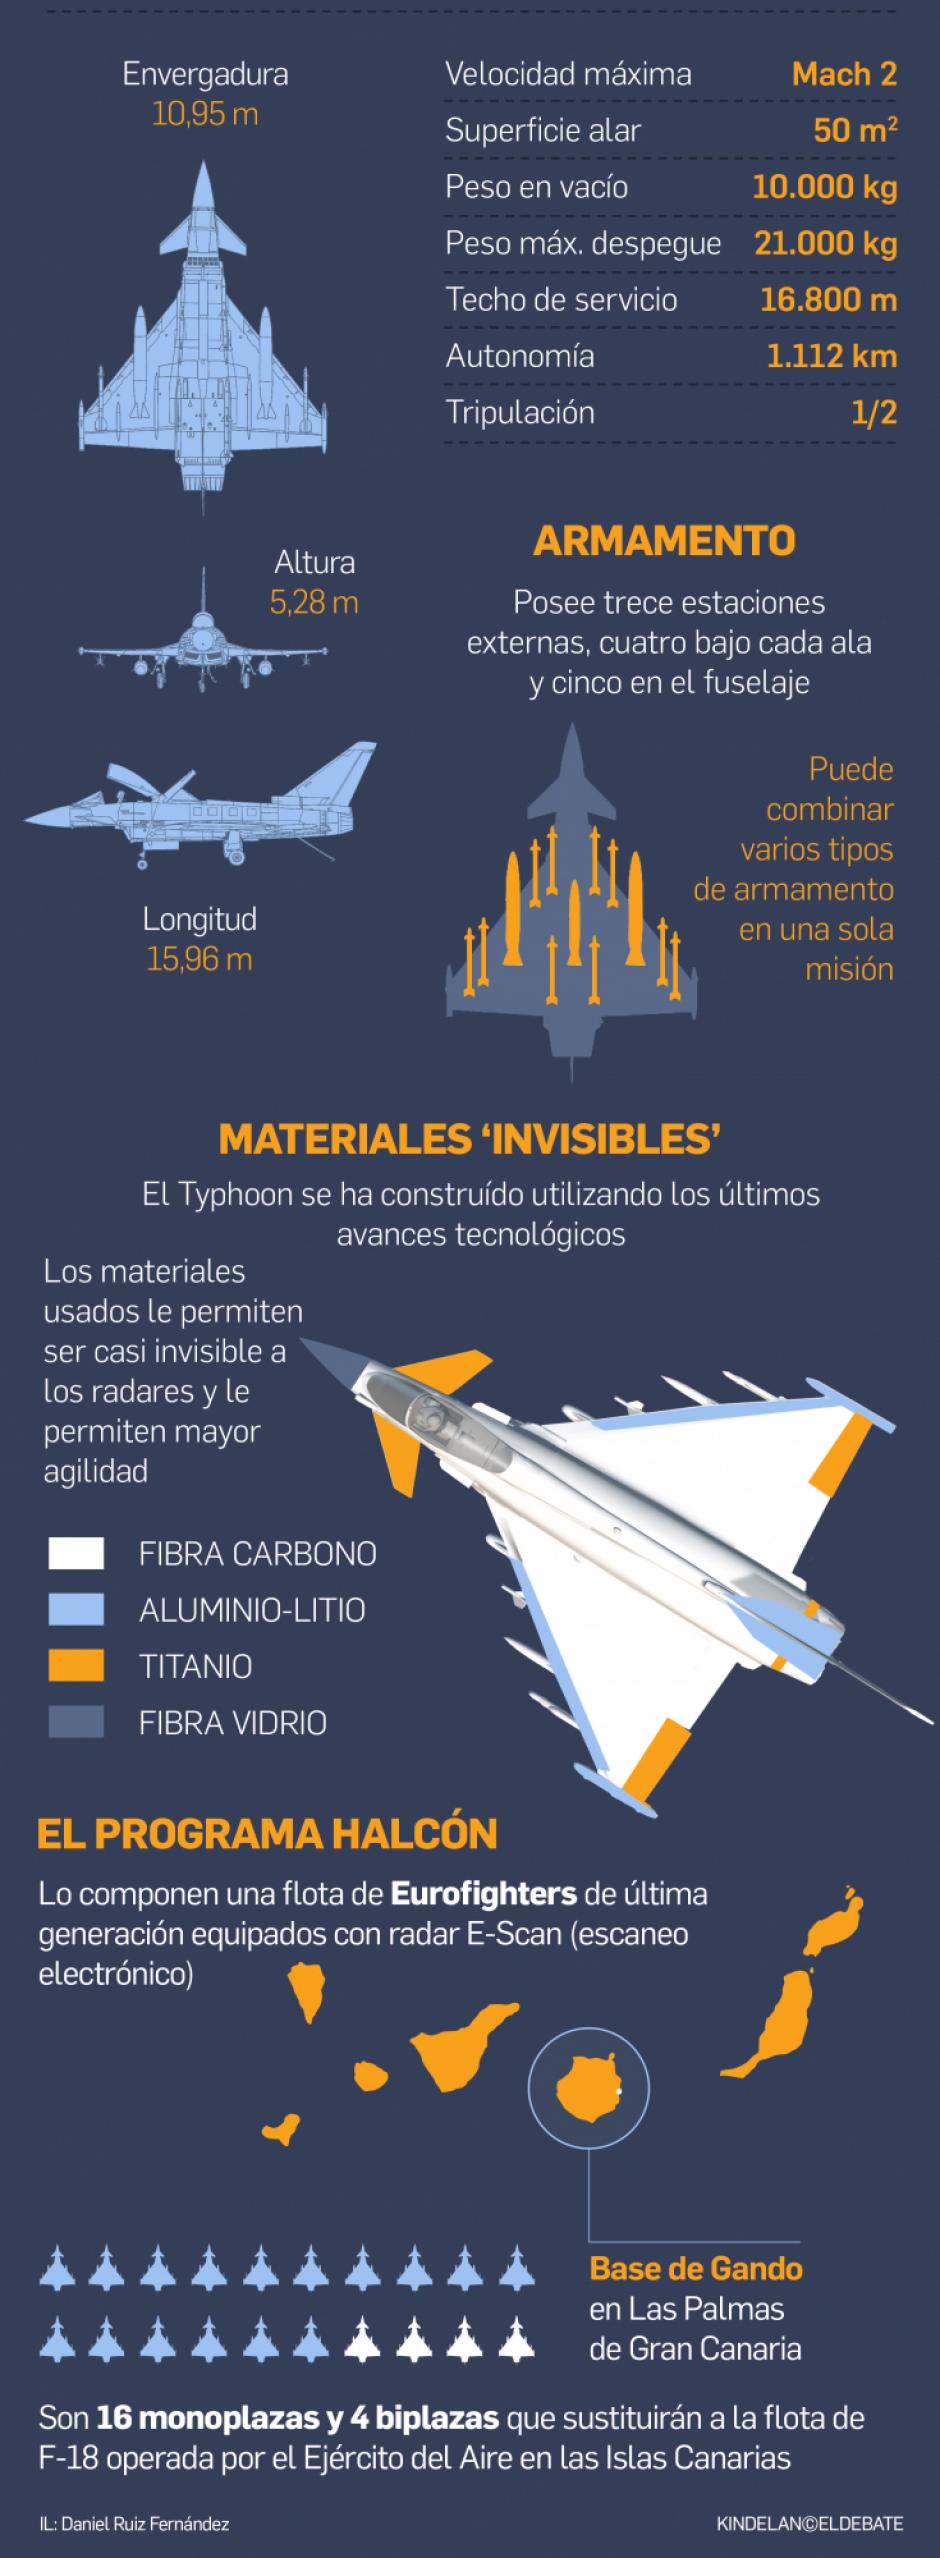 Así es el Eurofighter del Ejército del Aire español